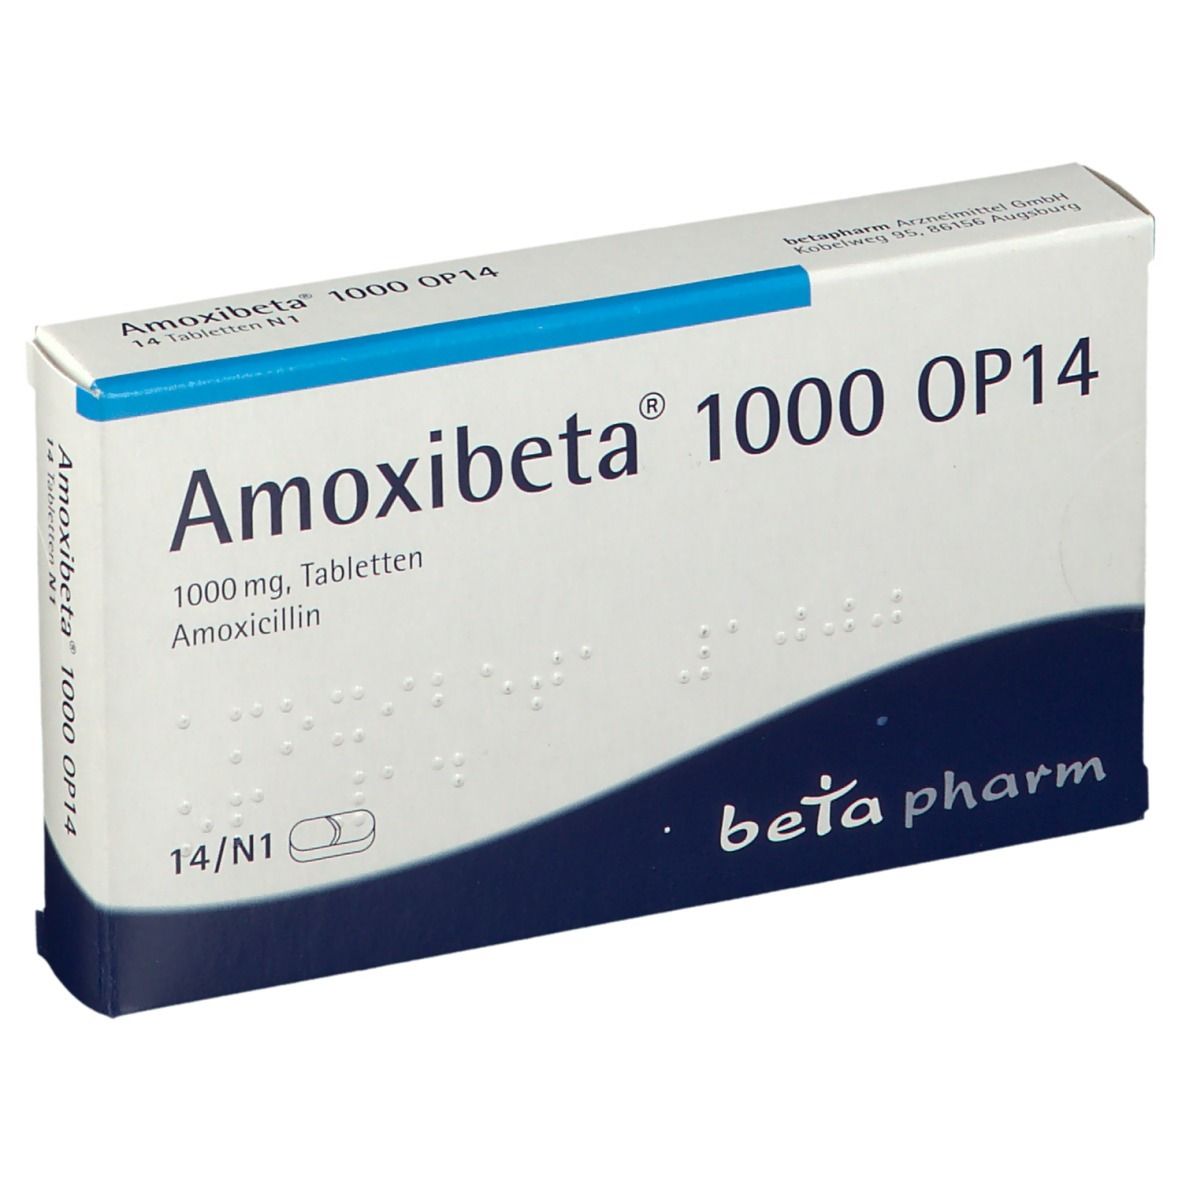 Amoxibeta® 1000 mg